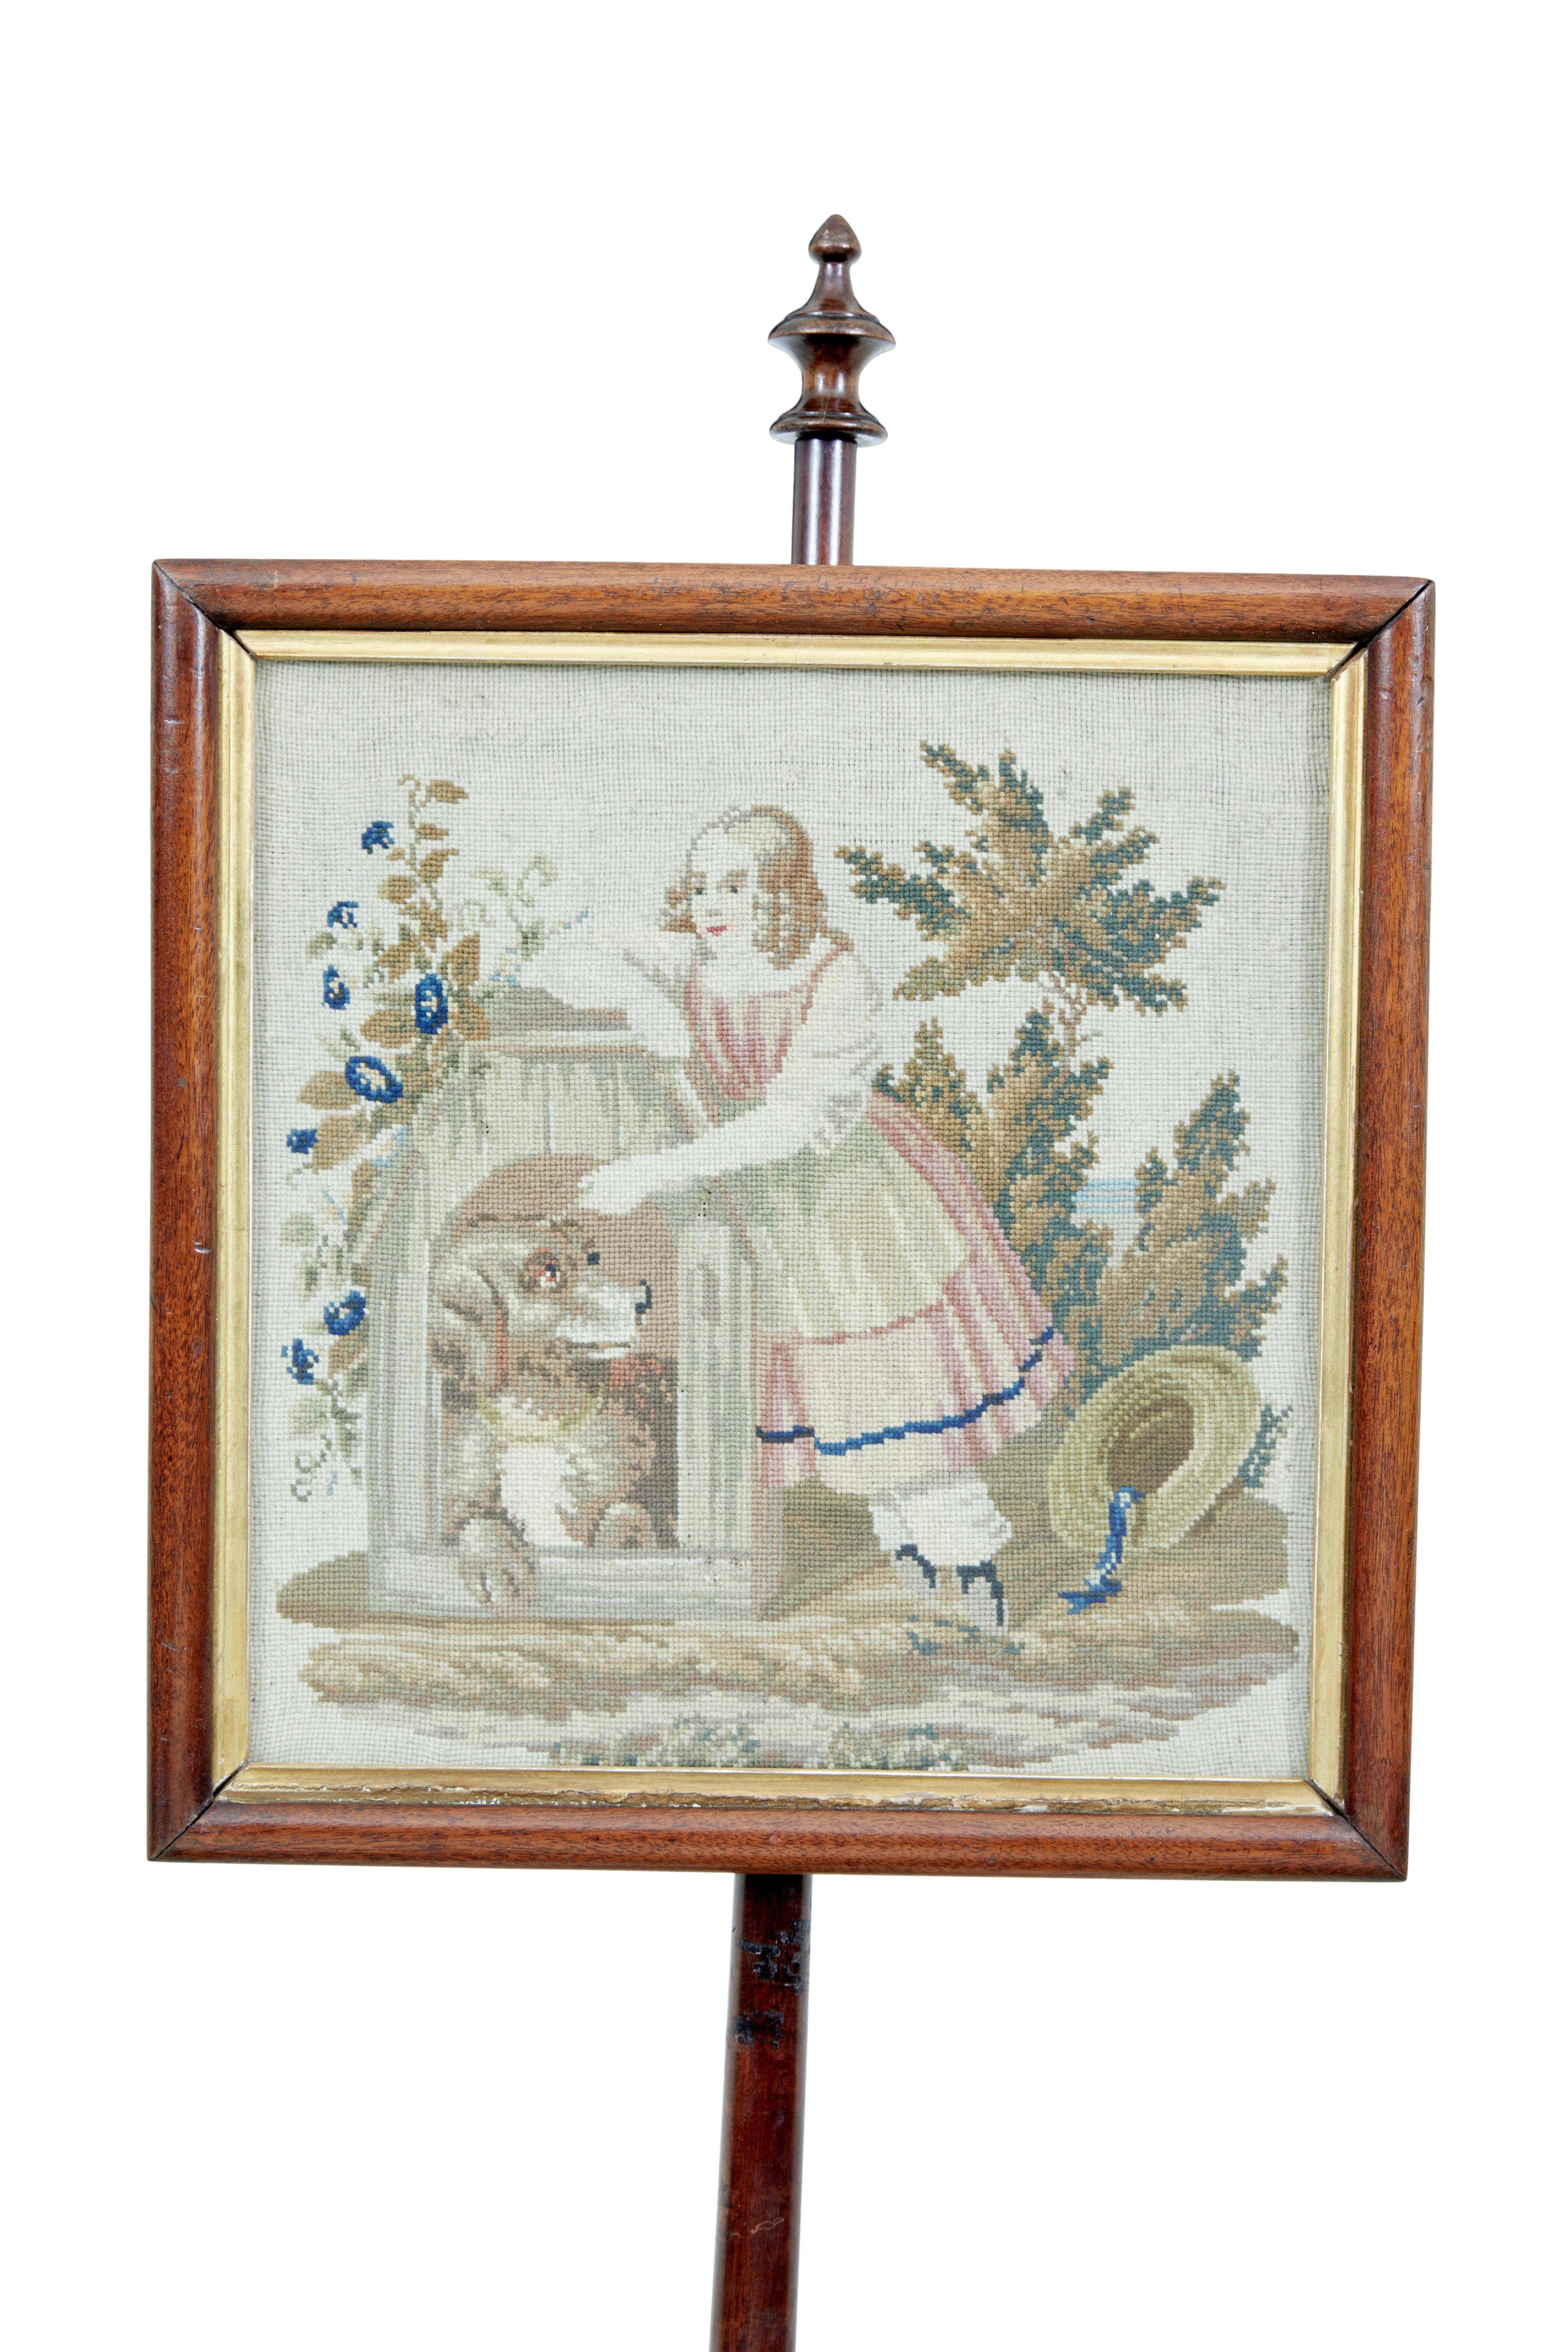 William IV. Mahagoni-Stangenschirm, 19. Jahrhundert, um 1830

Gerahmter Original-Wandteppich, der eine junge Frau mit einem Hund im Freien zeigt. Rahmen mit Goldauflage. Gestützt auf einen gedrechselten und geschnitzten Stiel, der auf einem Dreibein